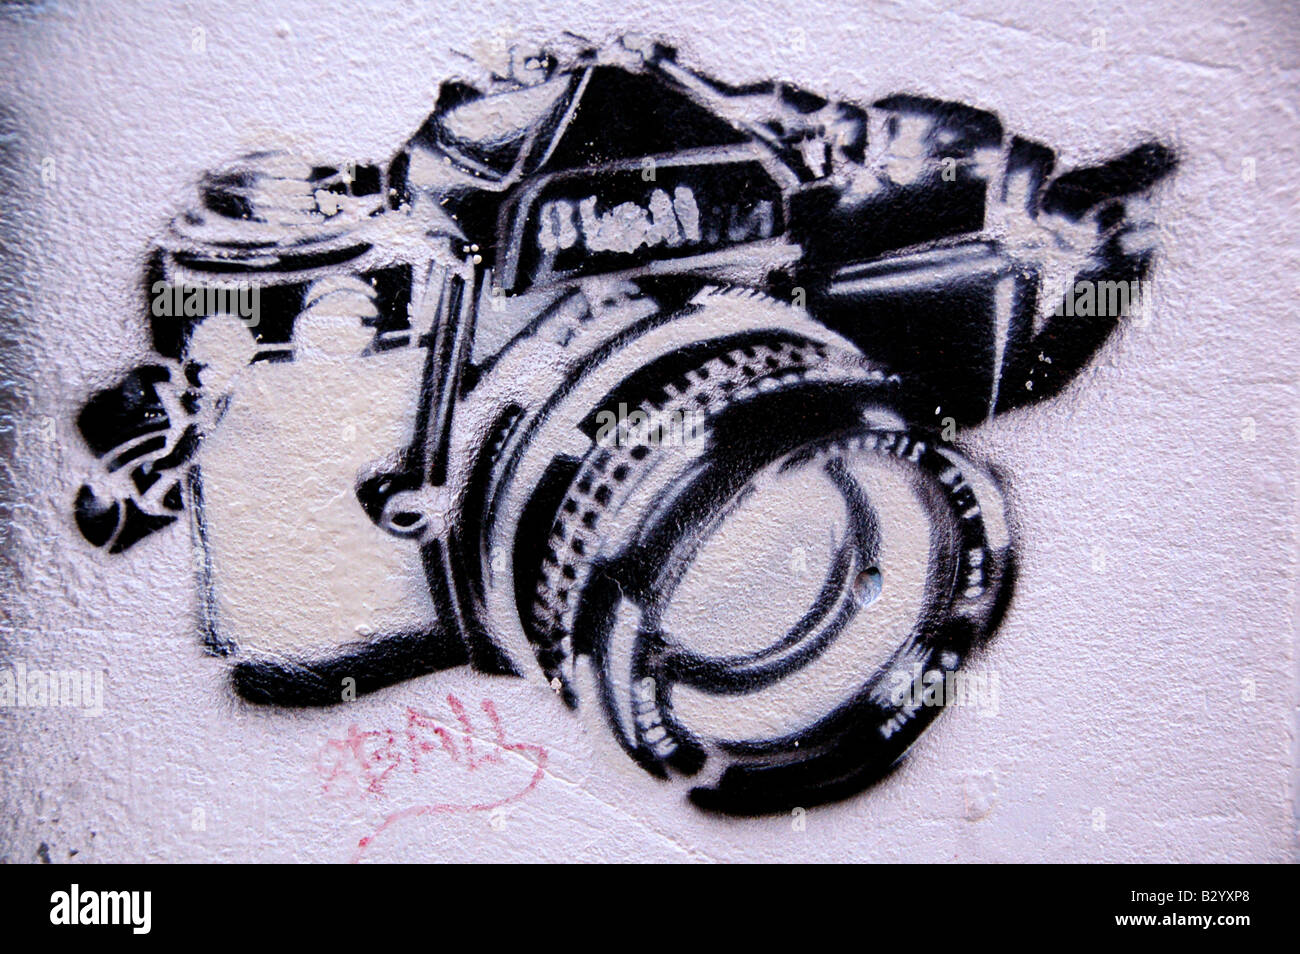 Graffiti Schablone Darstellung einer SLR-Kamera, gefunden auf einer Wand im Zentrum von Tel Aviv, Israel. Stockfoto